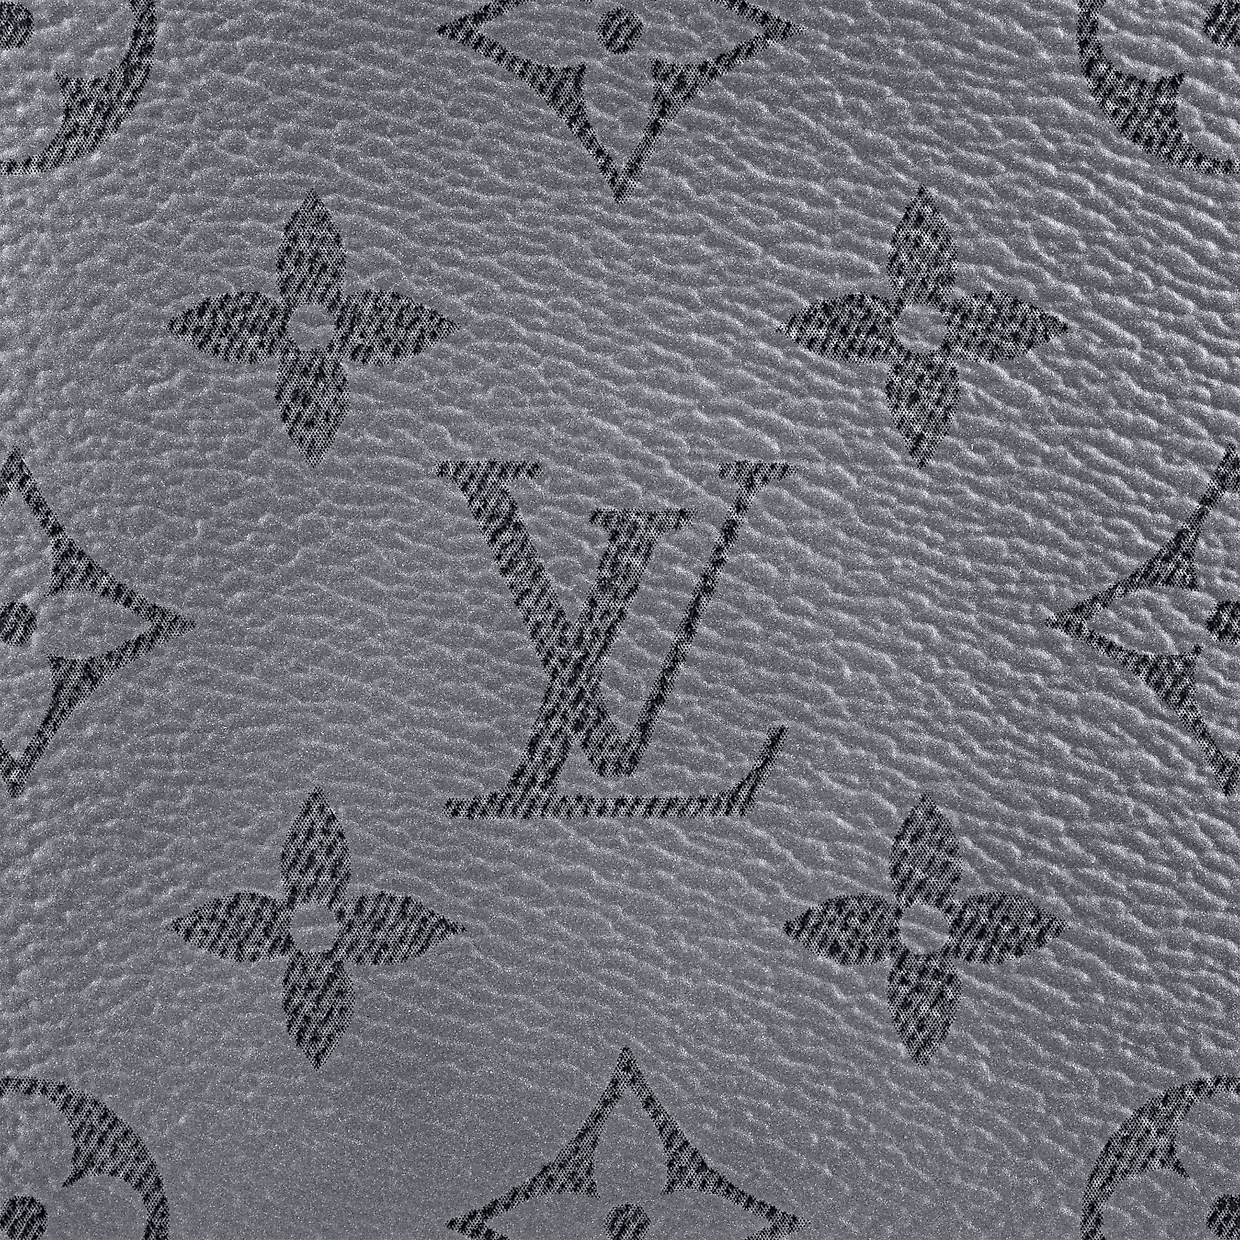 Với chiếc ví nam của Louis Vuitton, bạn sẽ thể hiện được phong cách thời trang sang trọng và đẳng cấp. Ngoài thiết kế tinh tế, chiếc ví còn được làm từ chất liệu da cao cấp và mang lại sự tiện dụng cho người sử dụng. Hãy nhanh tay sở hữu chiếc ví nam Louis Vuitton để khẳng định đẳng cấp của bạn.